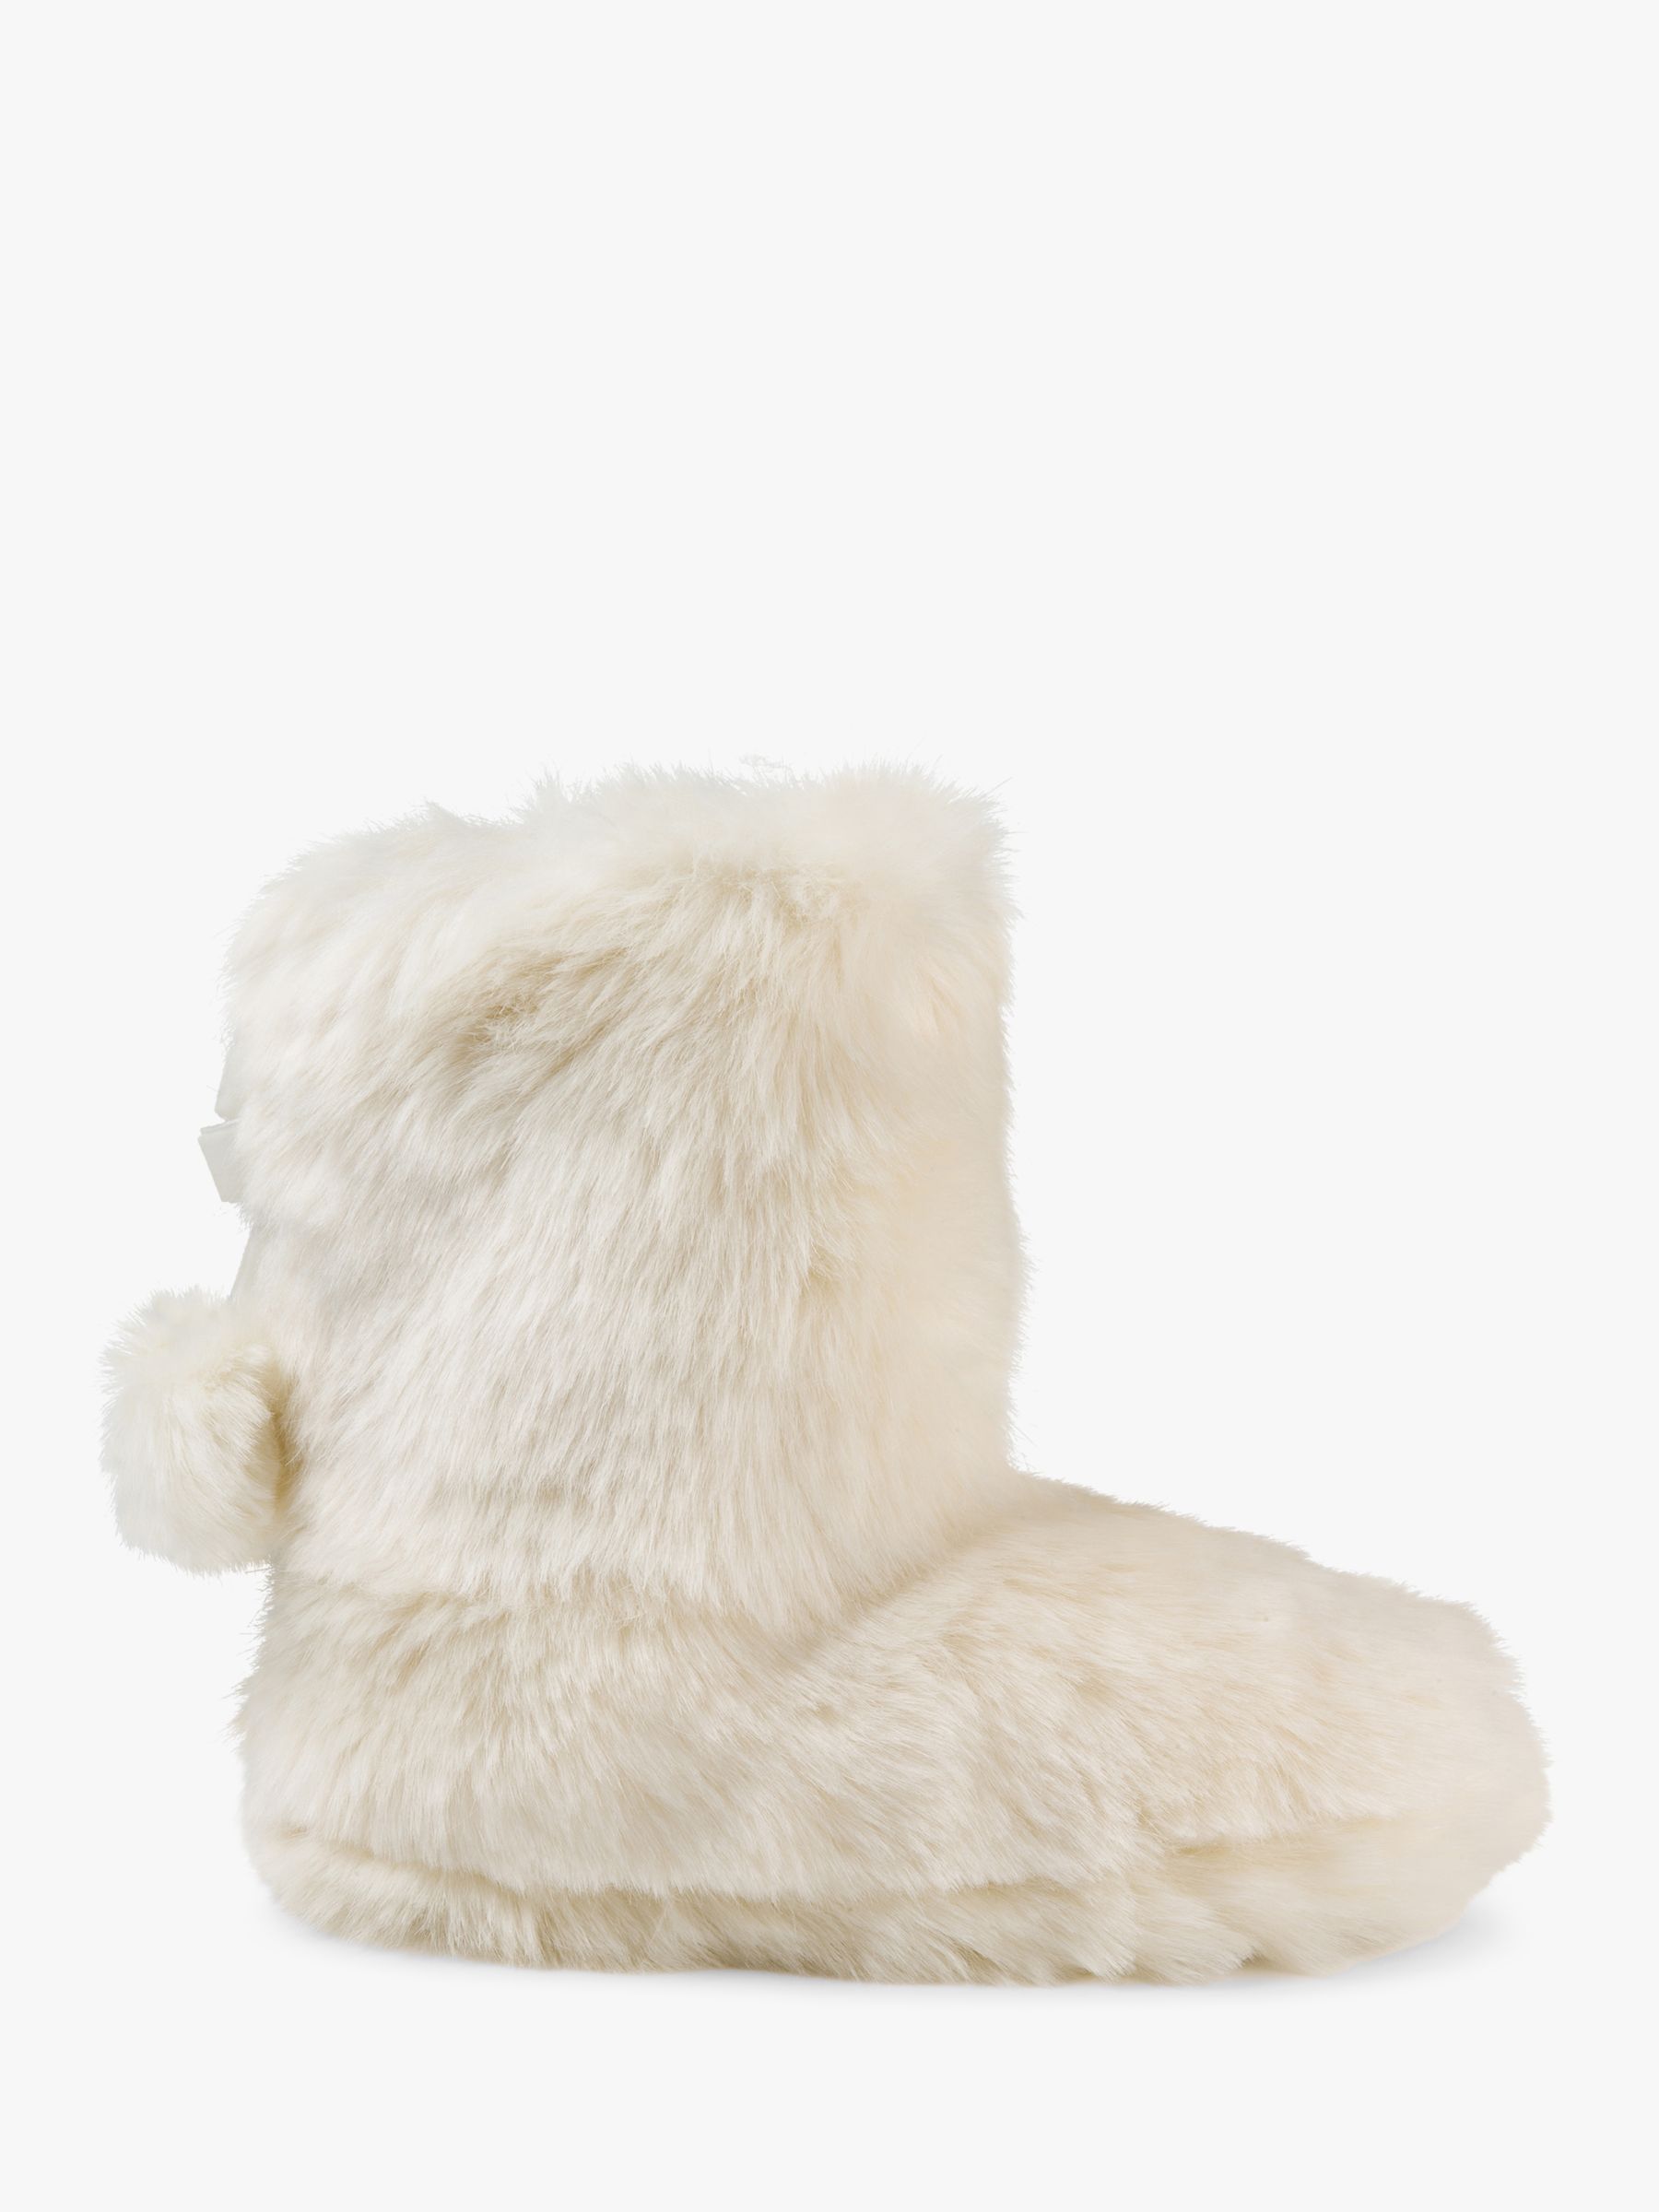 Ted Baker Hamond Slipper Boots, White 